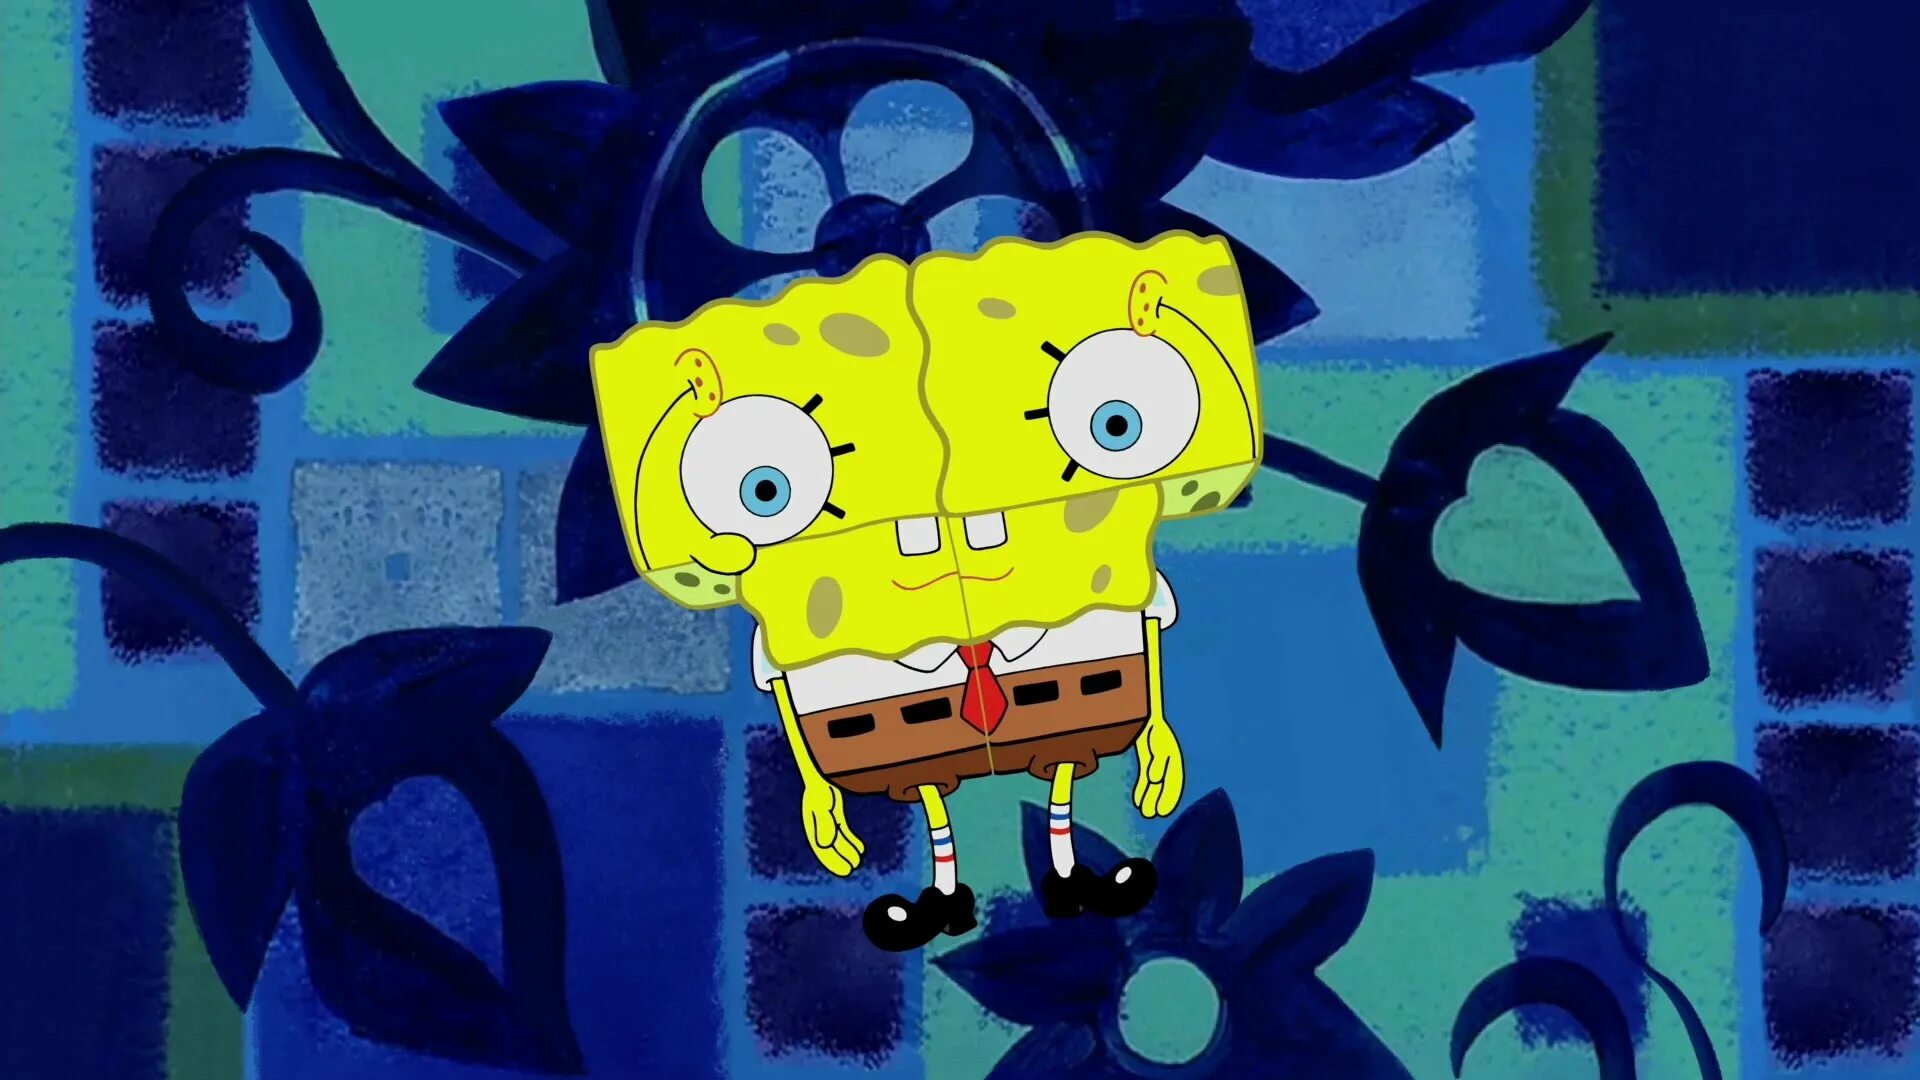 Ооо боба песня. Спанч Боб 1999. Губка Боб квадратные штаны 1999. Spongebob Squarepants Theme. Spongebob Squarepants Song.